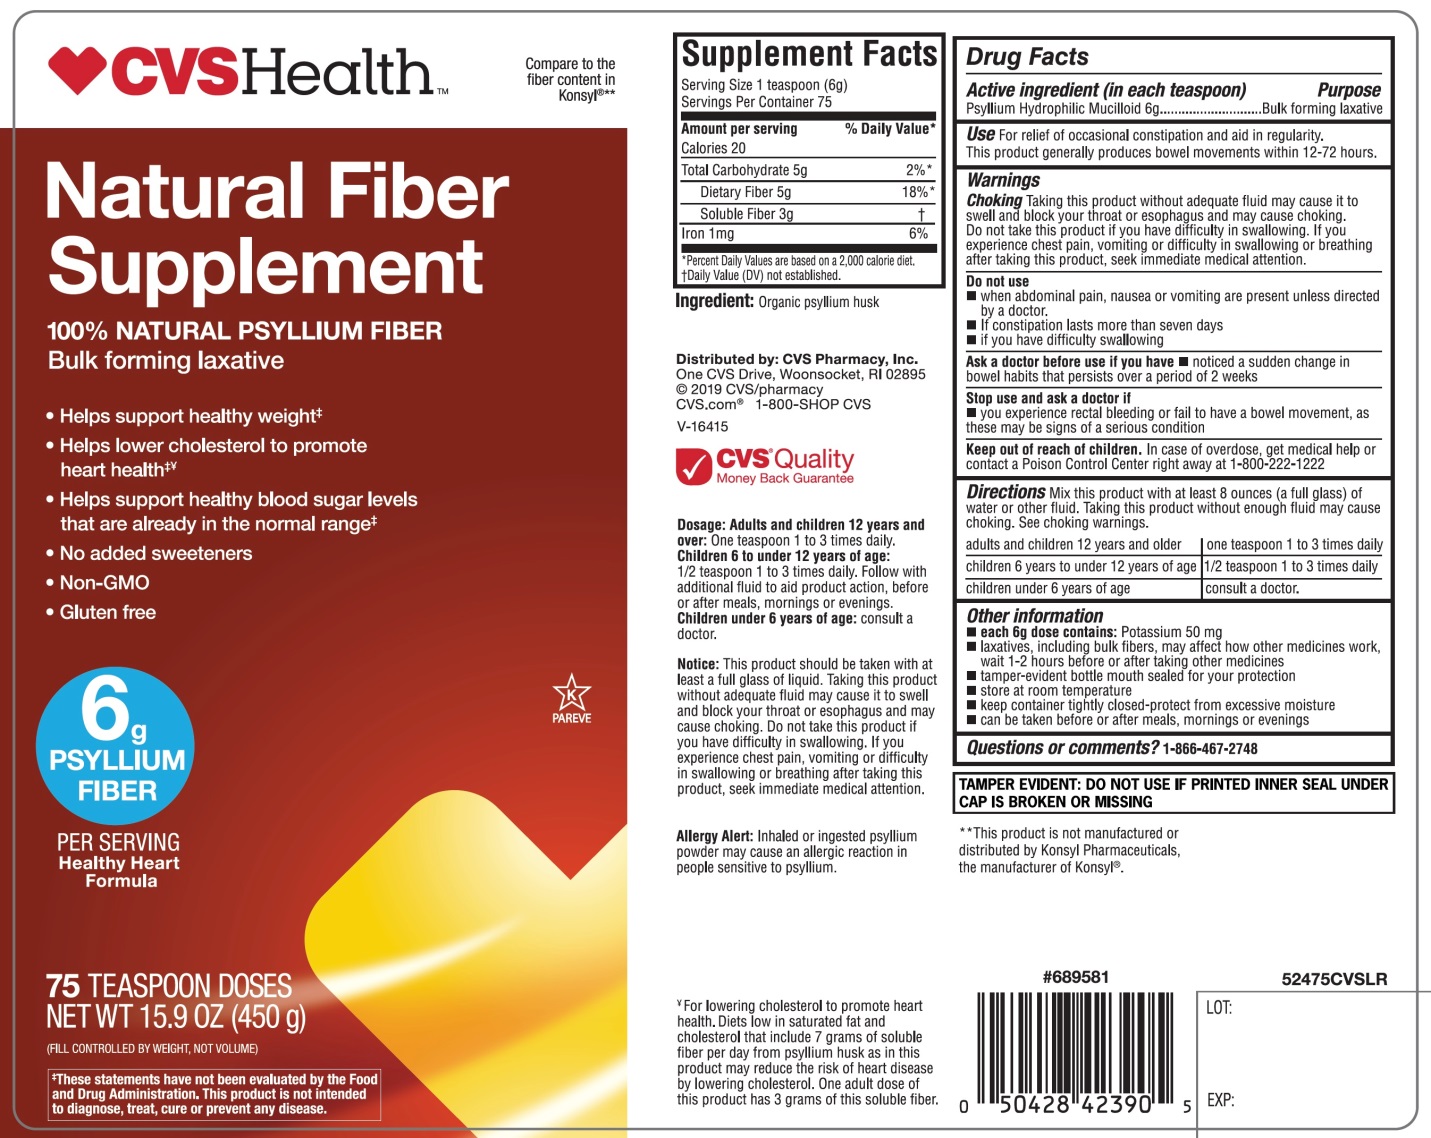 CVS Health Natural Fiber Supplement